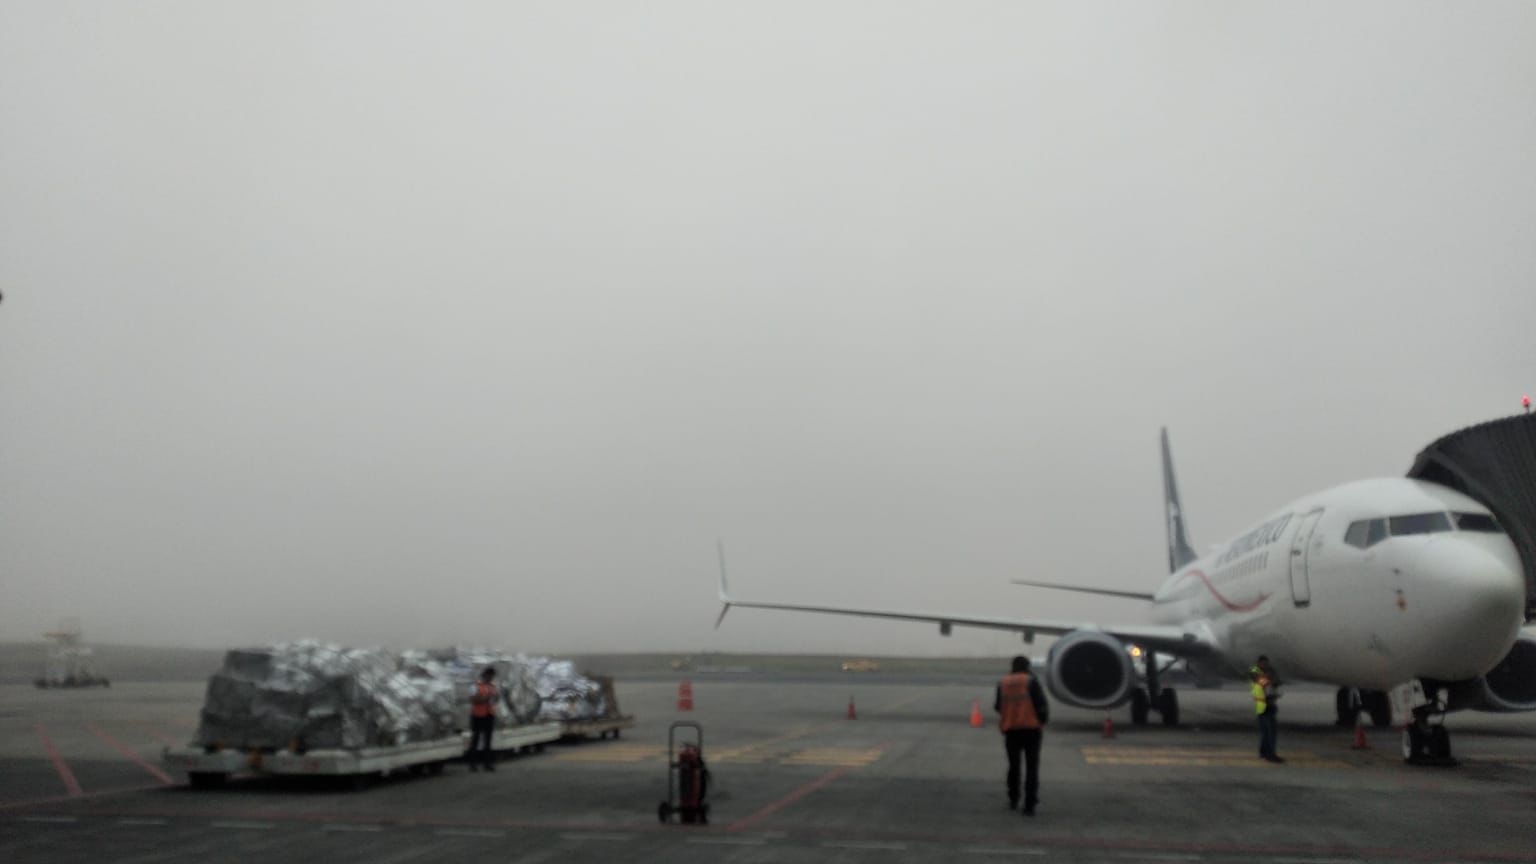 Las operaciones en La Aurora están suspendidas por las condiciones climáticas que afectan la visibilidad. (Foto Prensa Libre: DGAC)